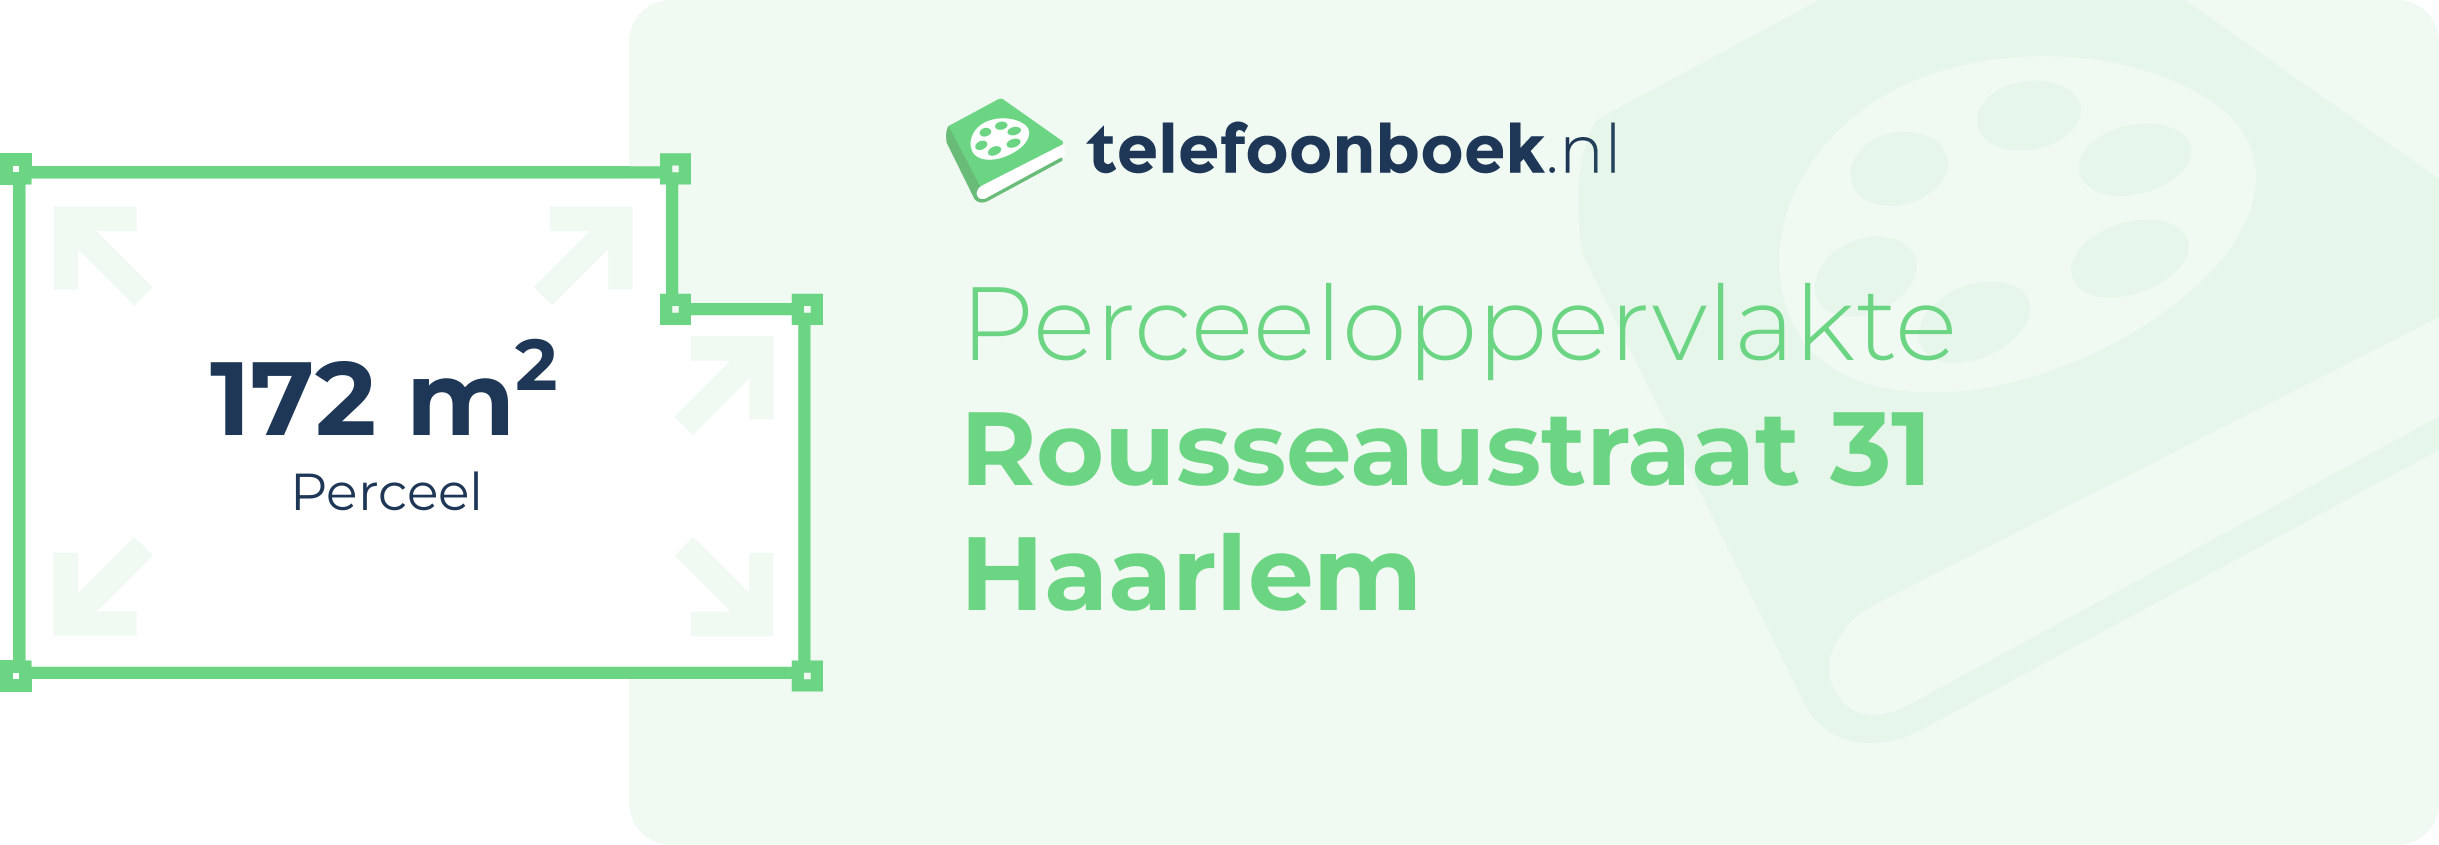 Perceeloppervlakte Rousseaustraat 31 Haarlem